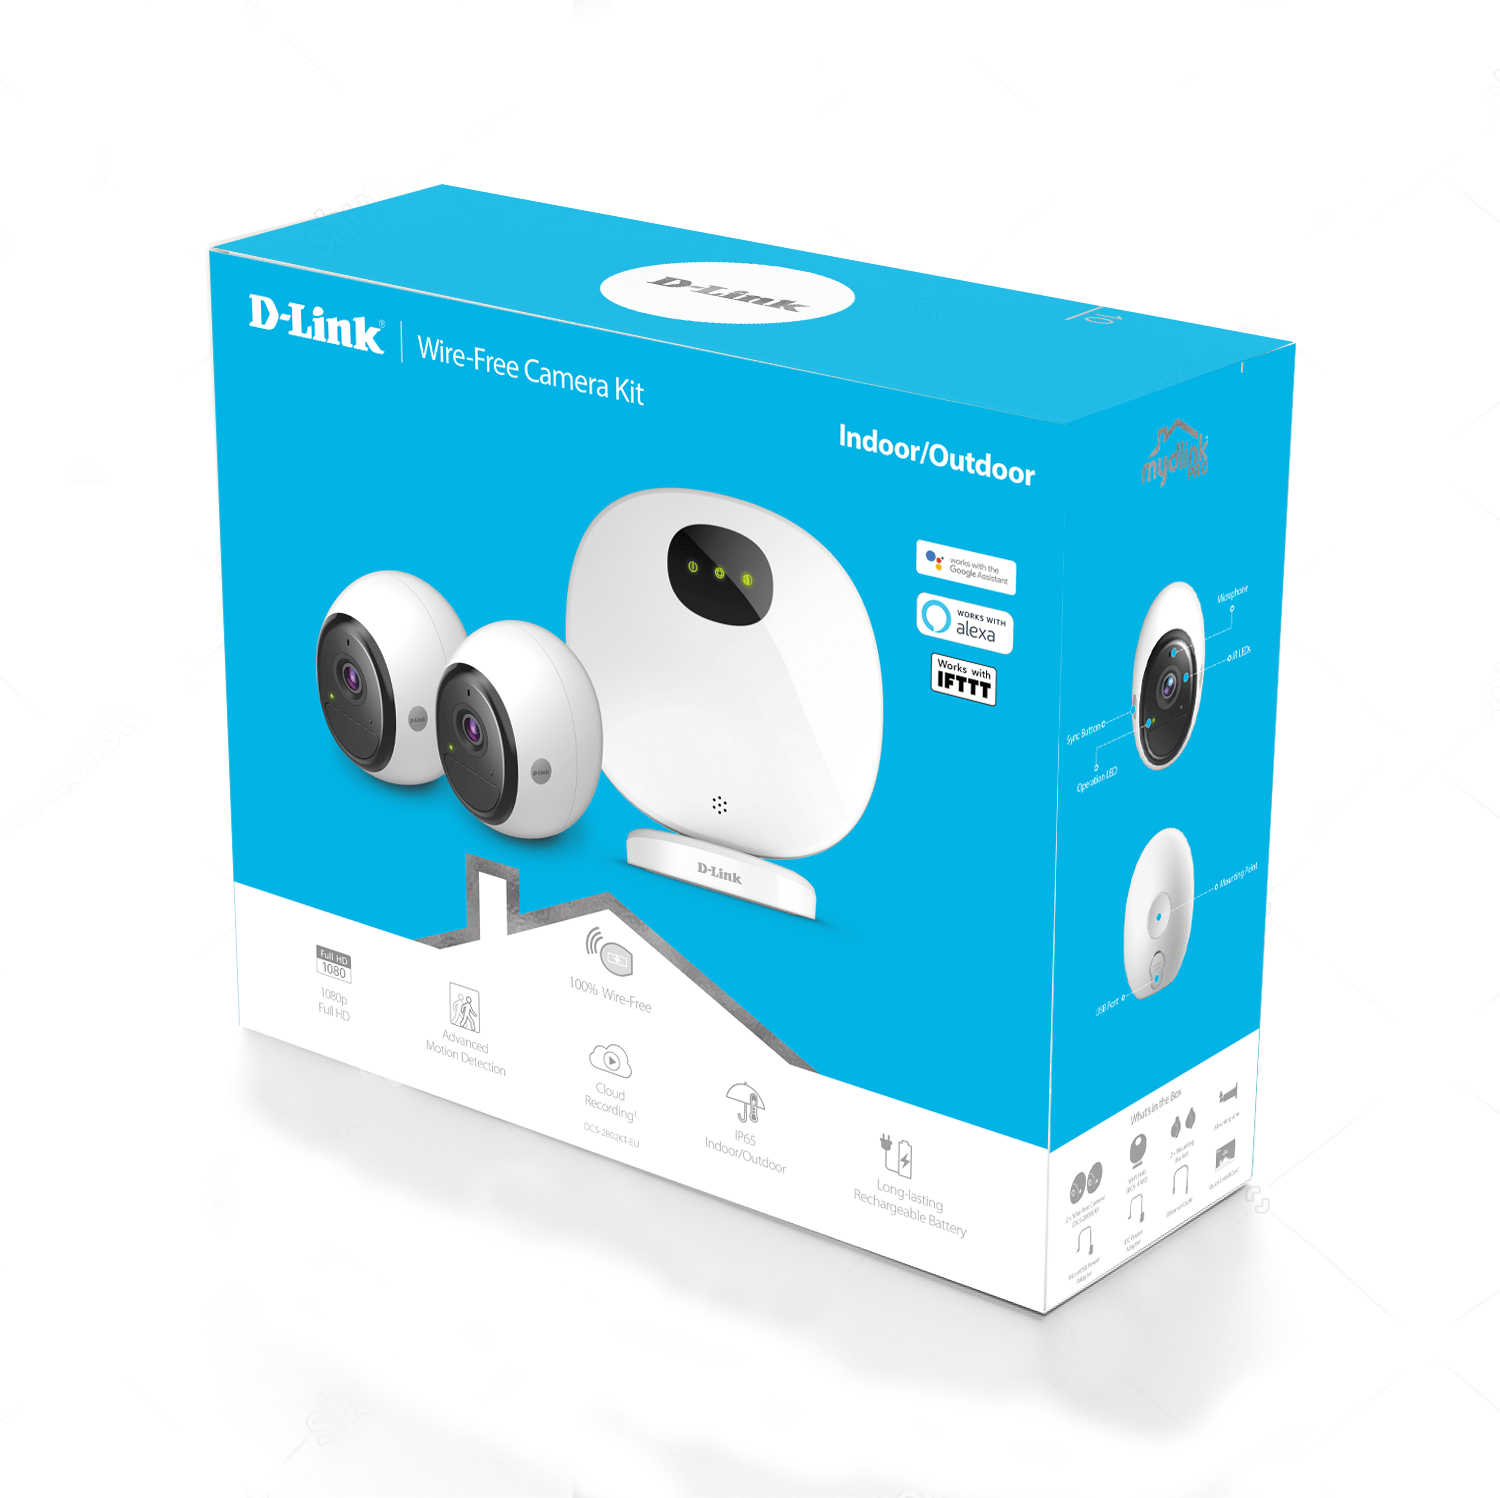 D-Link presenta il suo primo kit di videocamere senza fili alimentate a batteria, per una sorveglianza semplice e flessibile 1